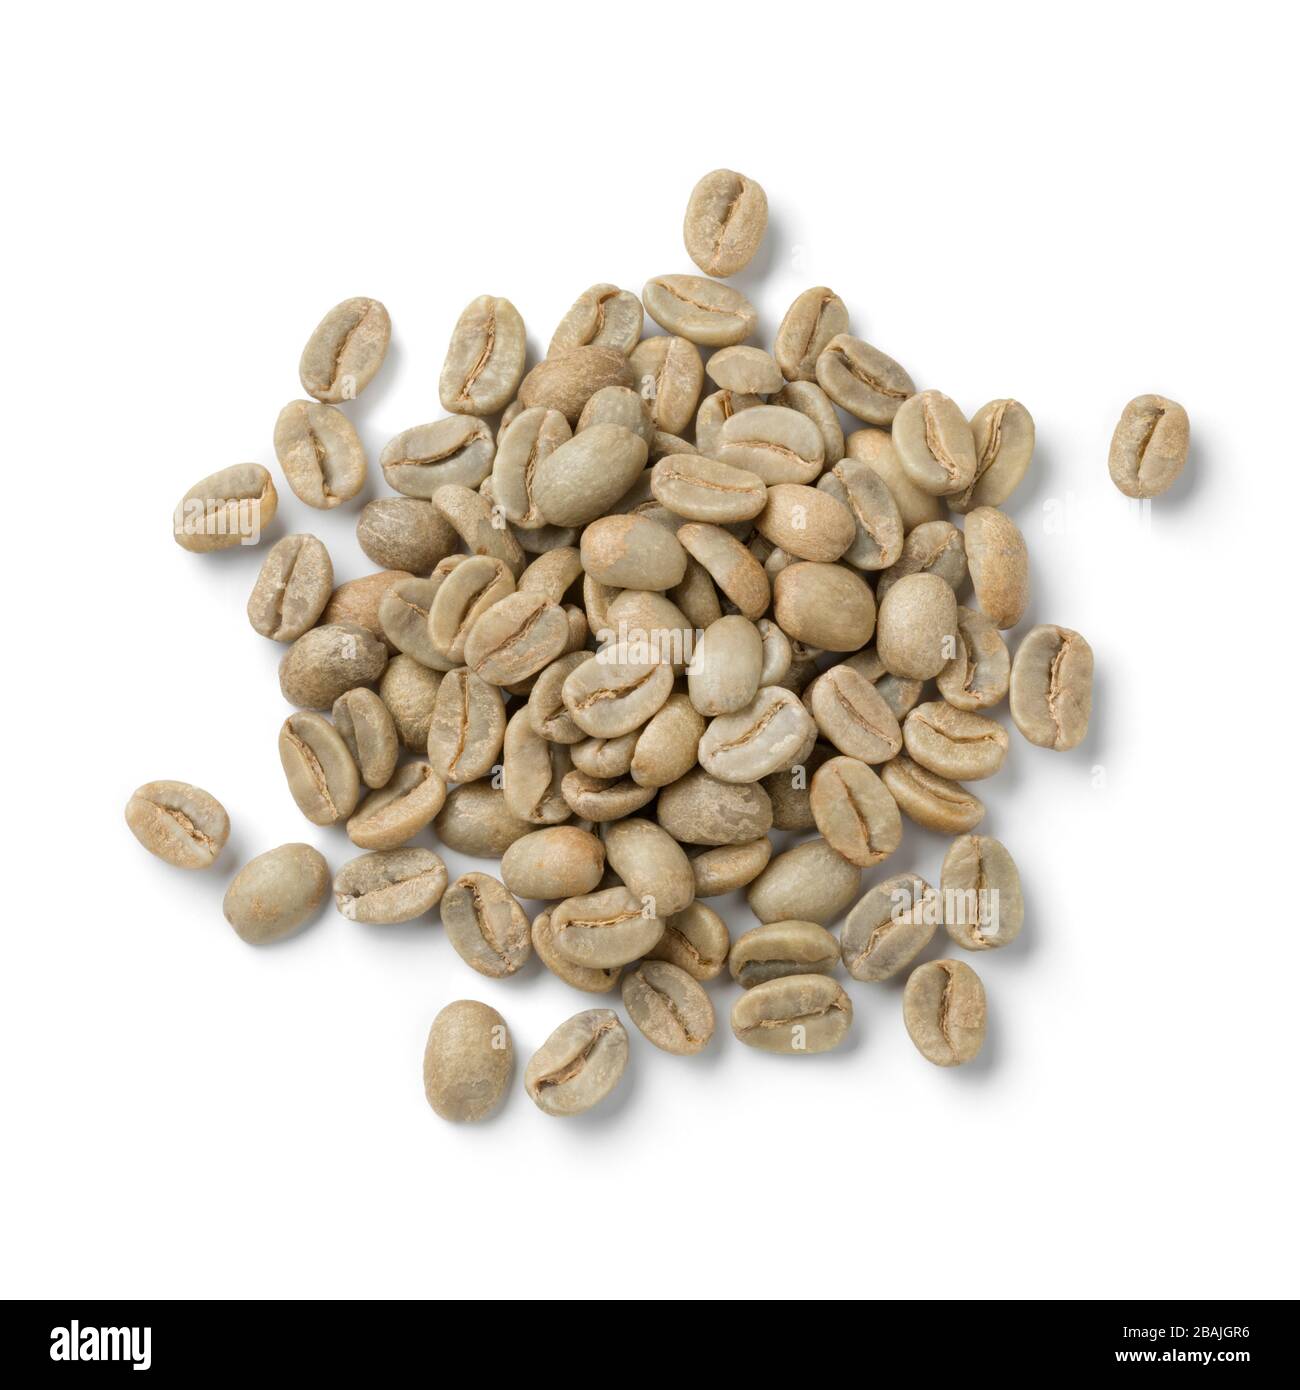 Tas de grains de café boliviens Yanaloma verts non torréfiés isolés sur fond blanc Banque D'Images